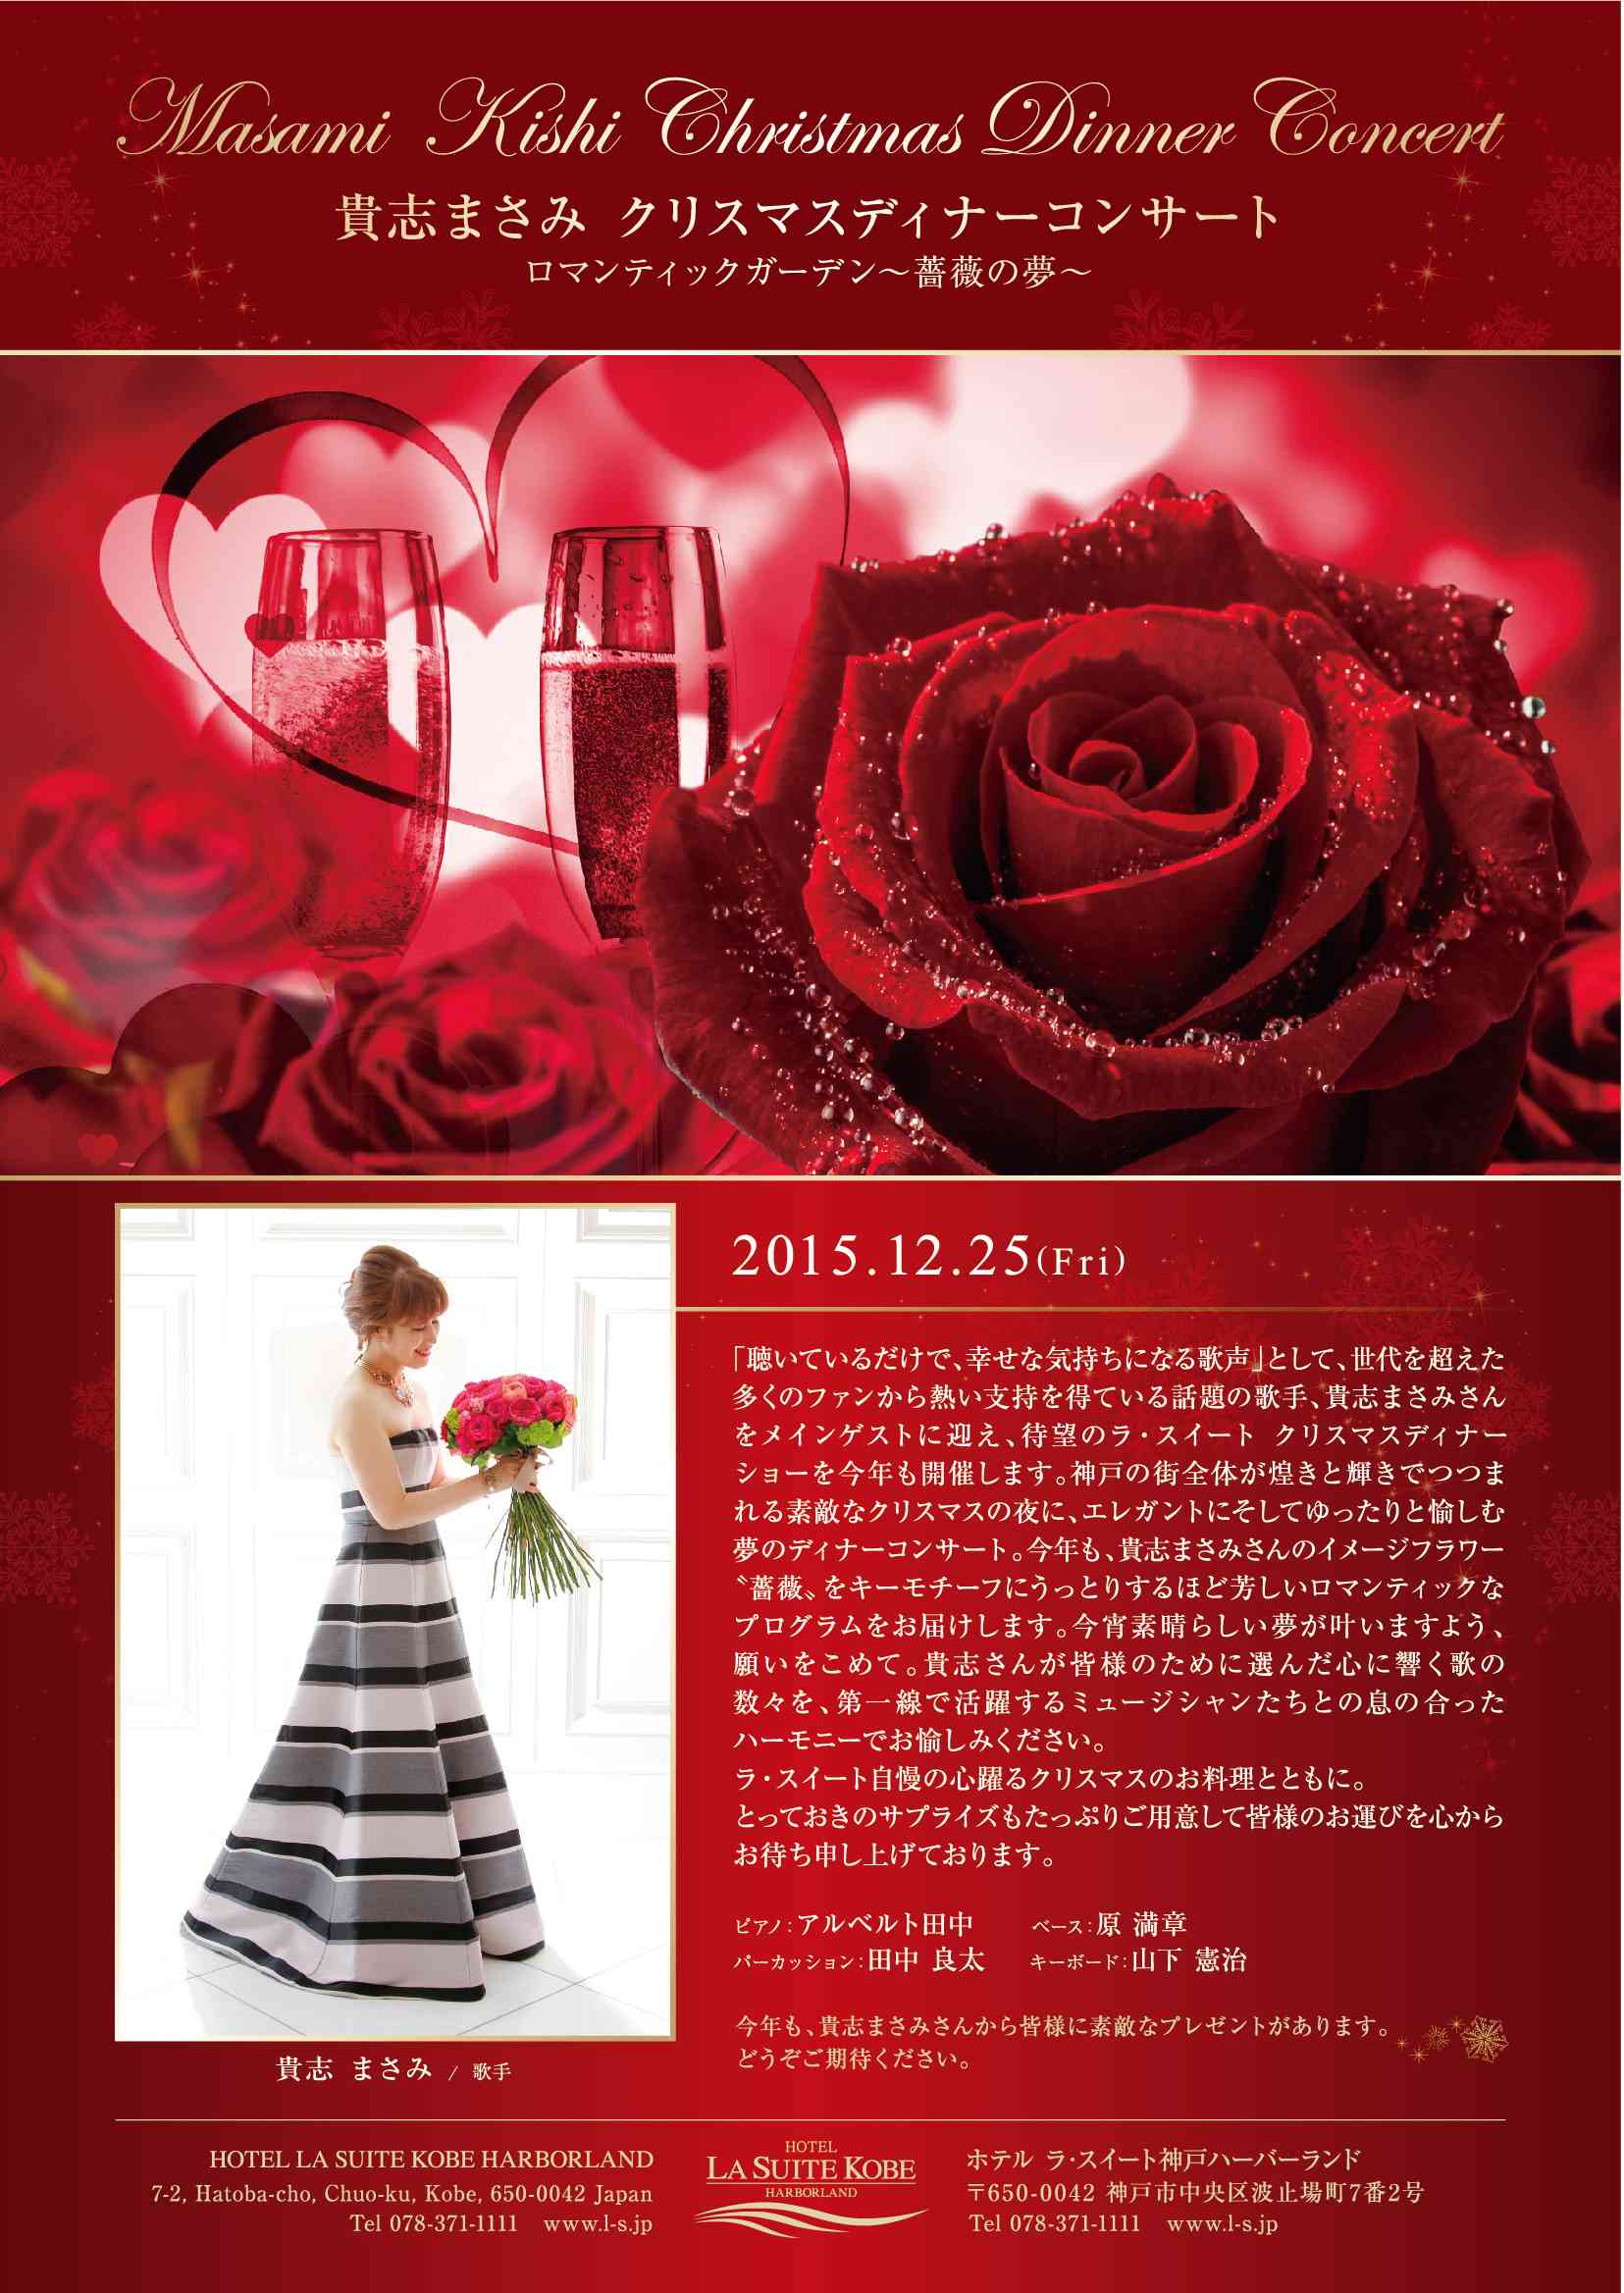 Featured image for “クリスマスディナーコンサート ロマンティックガーデン 〜薔薇の夢〜”